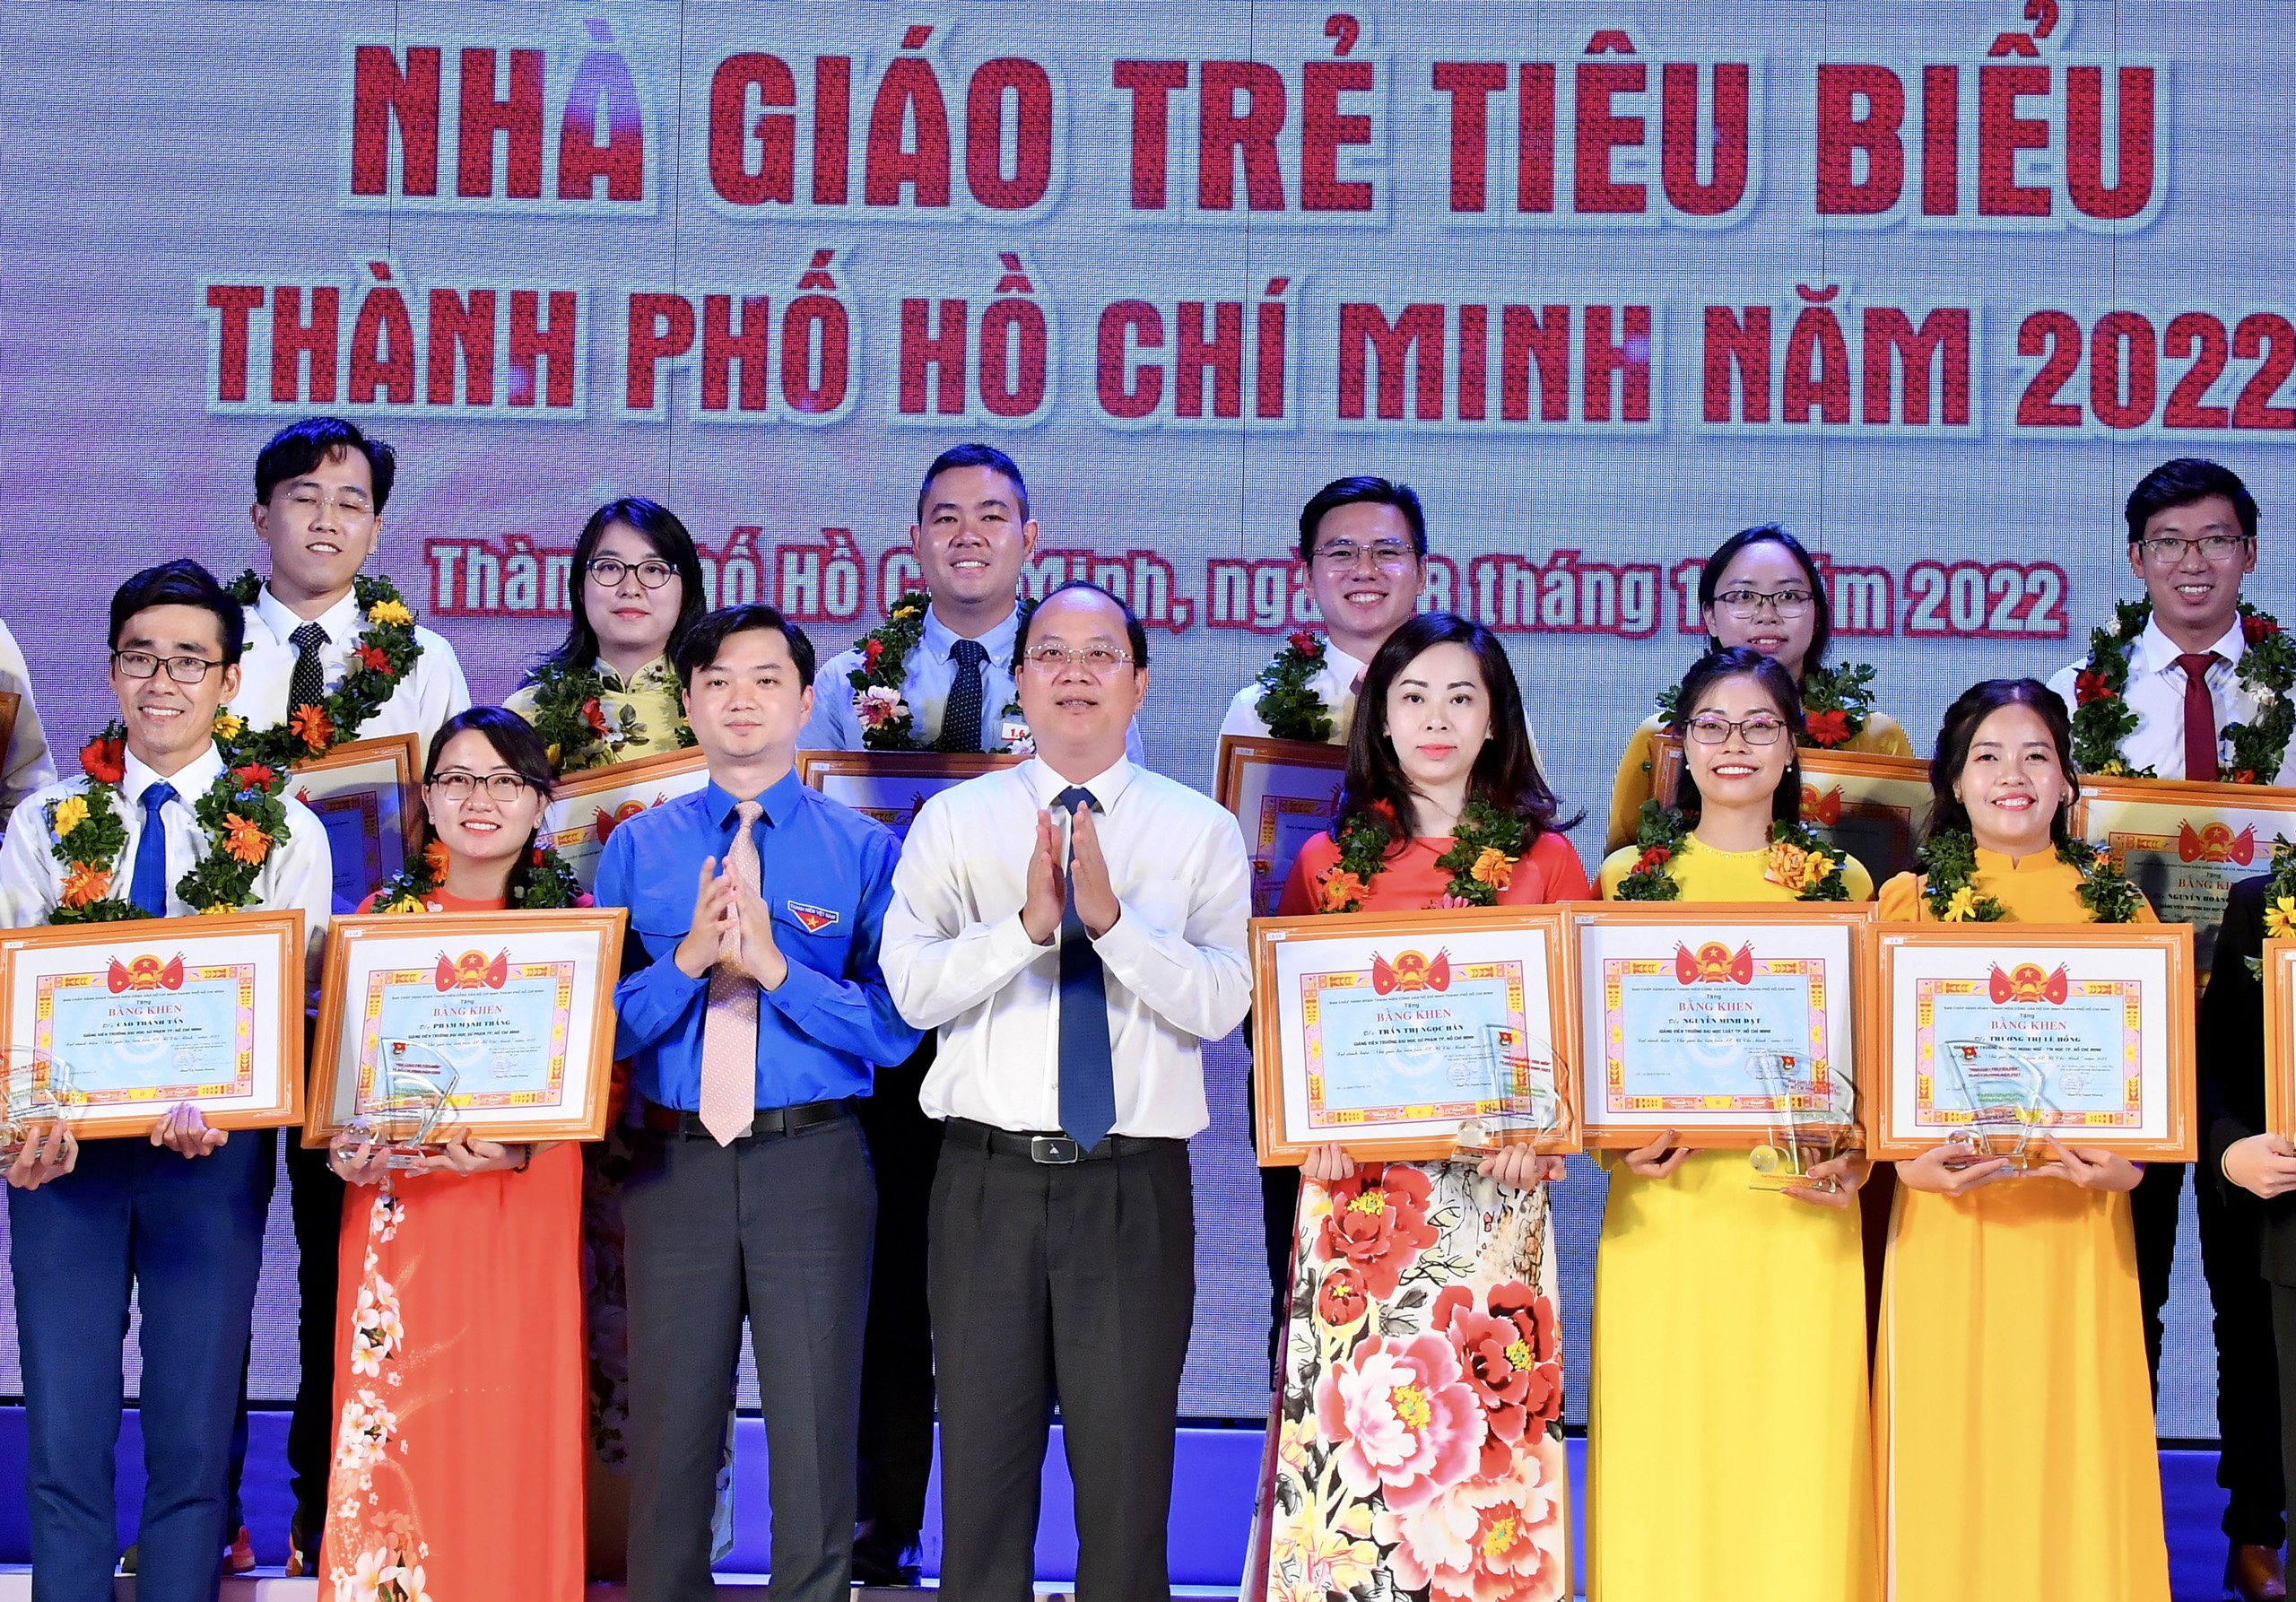 Các giáo viên được tuyên dương Nhà giáo trẻ tiêu biểu TP. Hồ Chí Minh năm 2022 (Ảnh: VIỆT DŨNG)